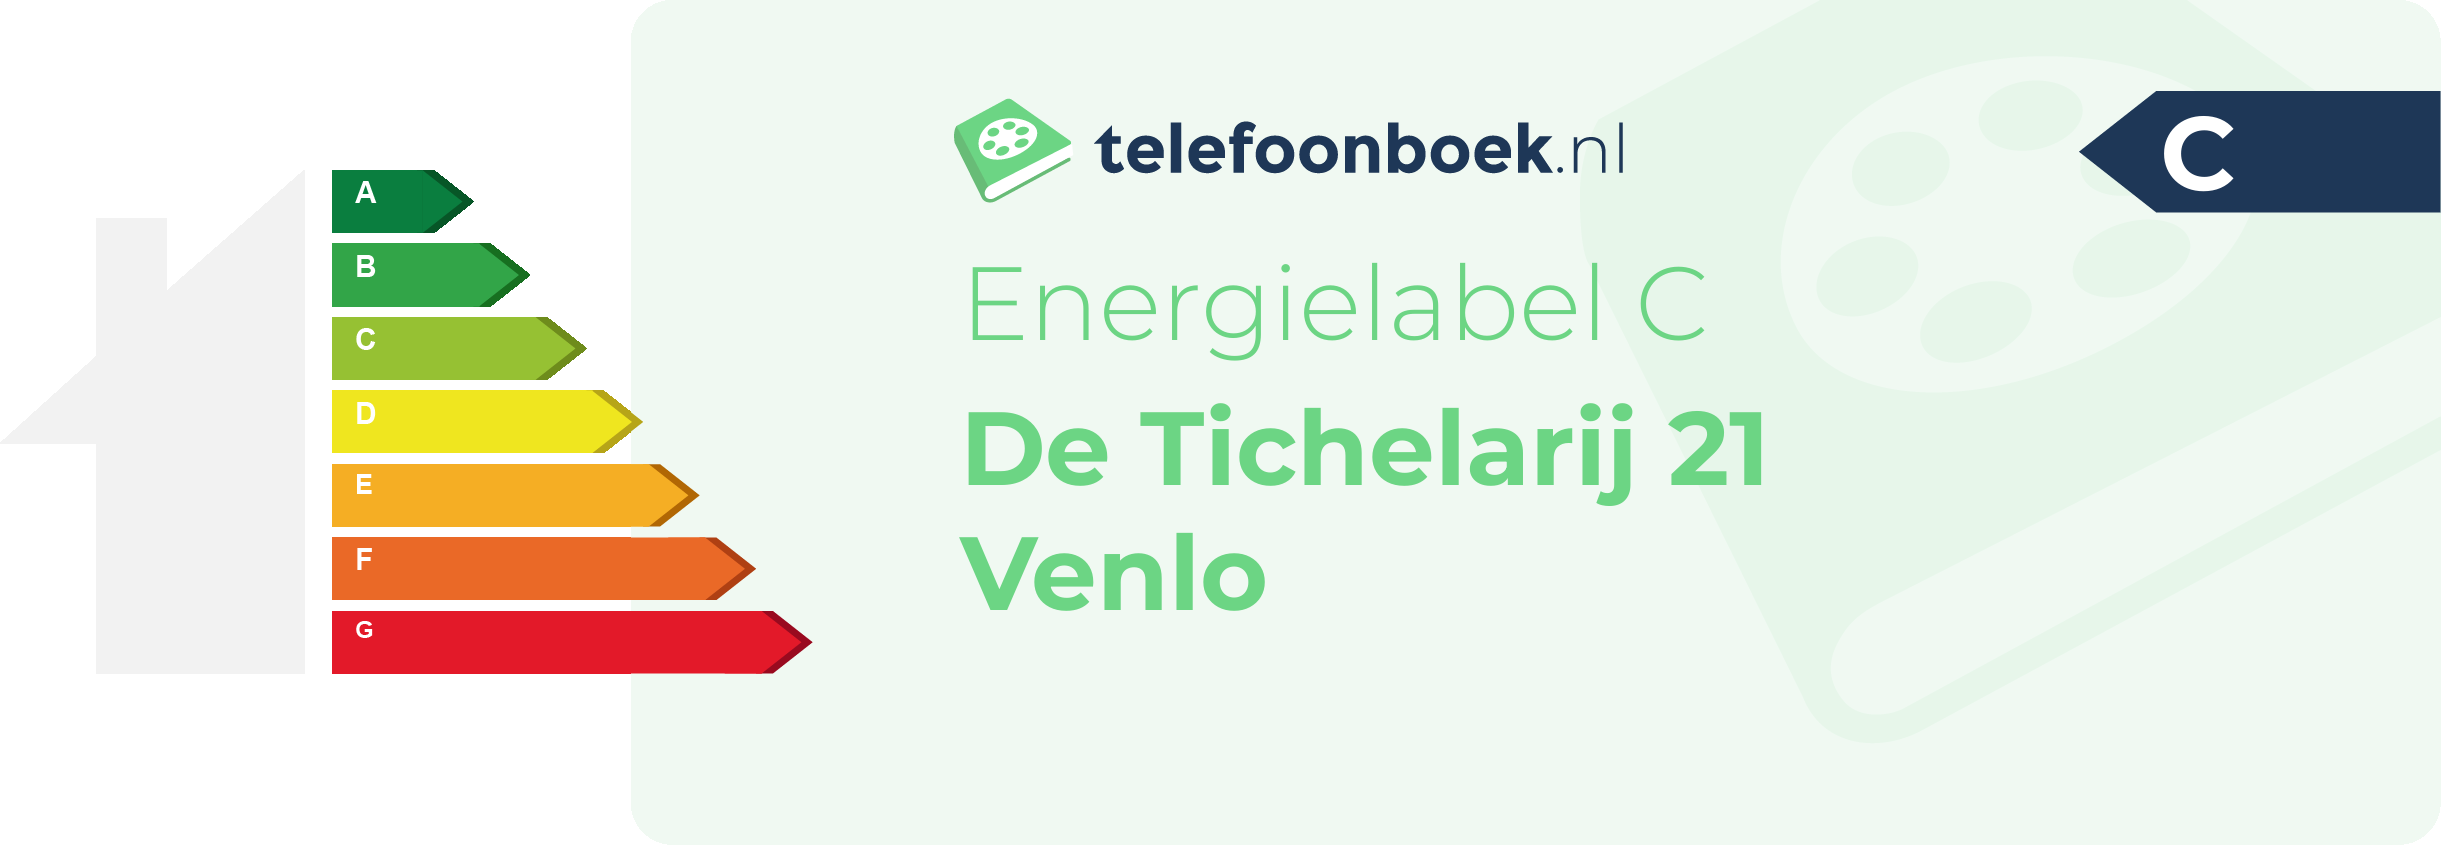 Energielabel De Tichelarij 21 Venlo